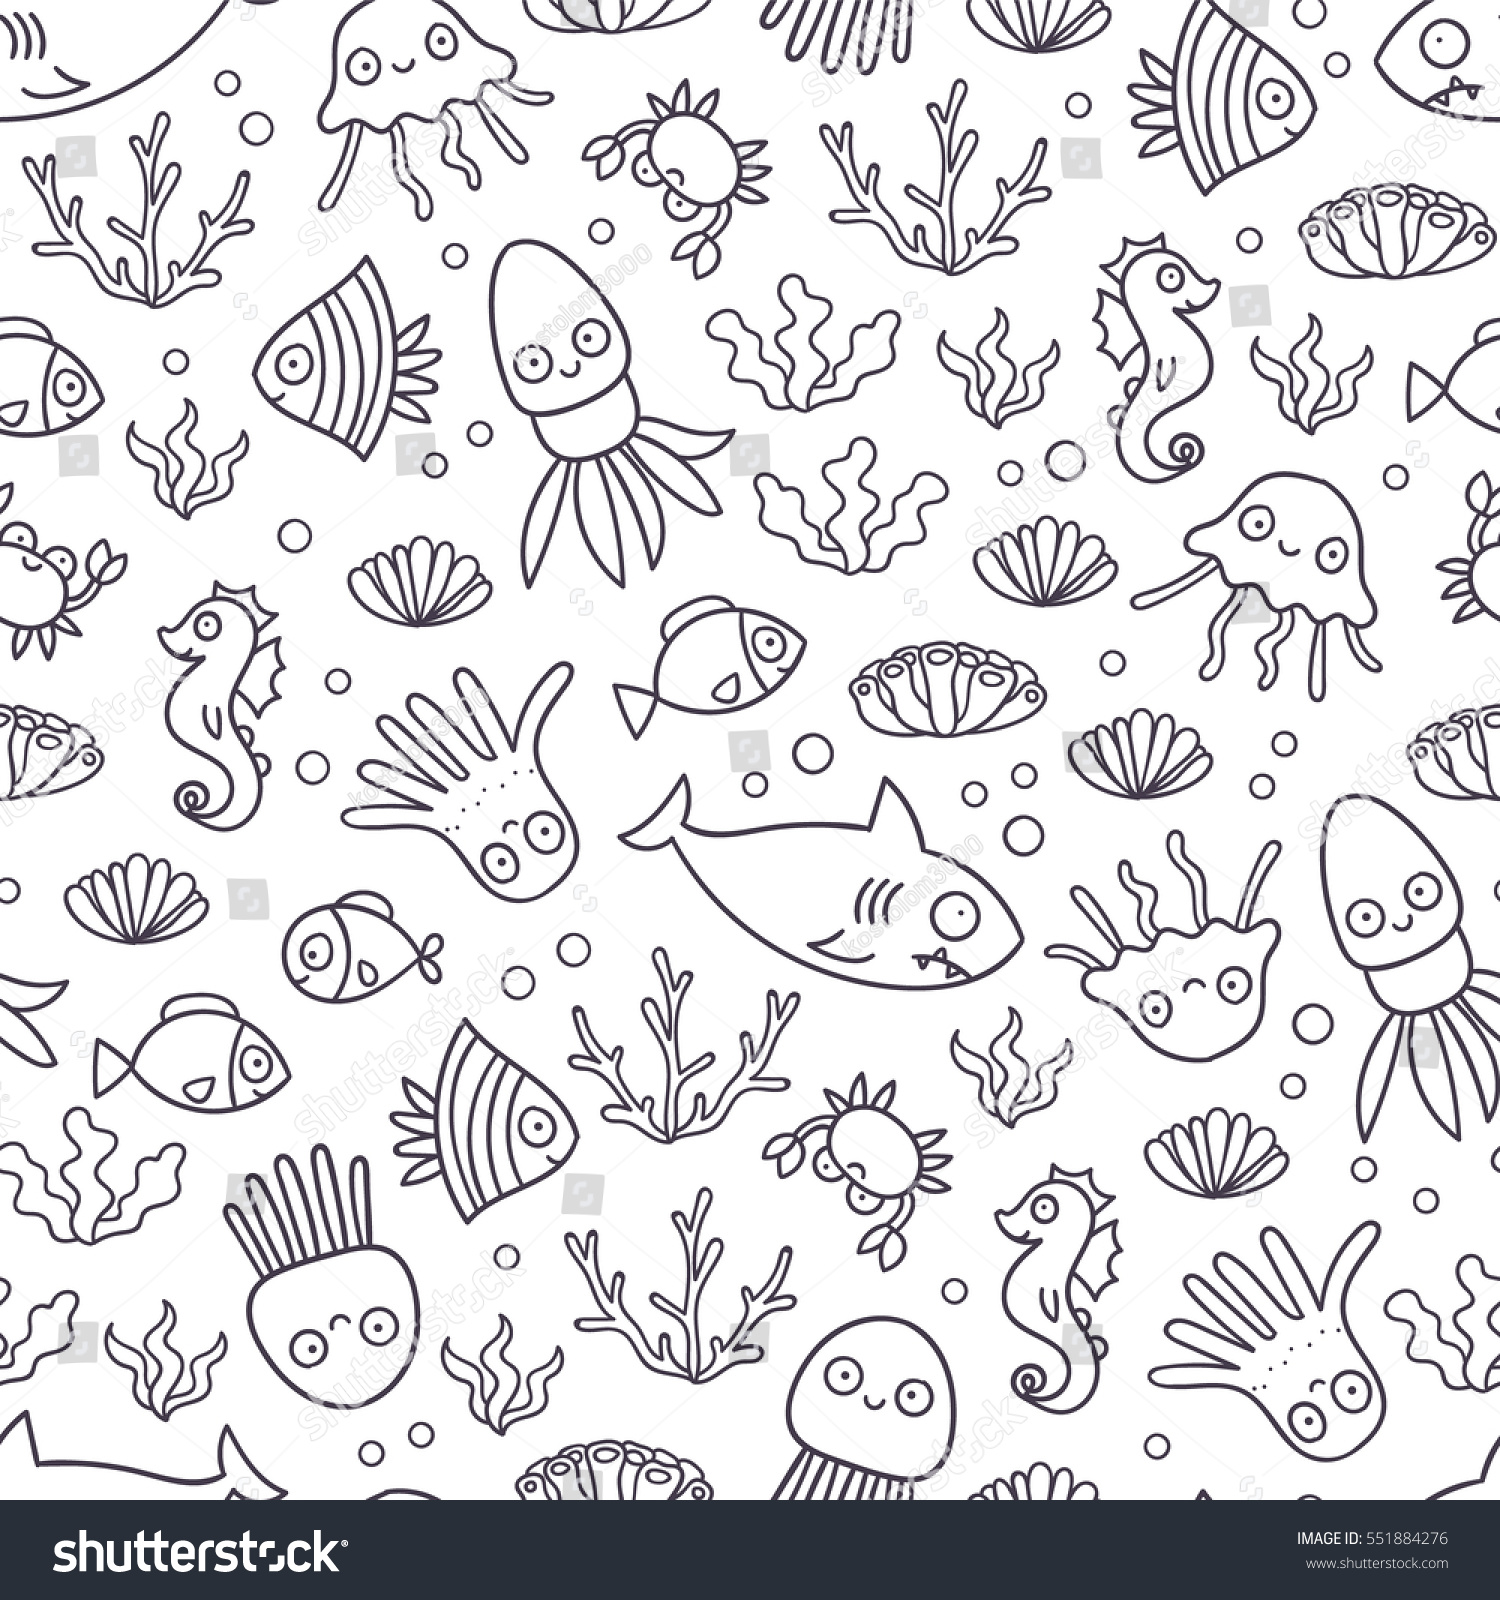 おかしな漫画の魚 カニ タコ ゼリーフィッシュ シームレスな模様 デザイン 布地の繊維 壁紙 または包装紙の背景にタイルを使用します 可愛い落書き動物 のベクター画像素材 ロイヤリティフリー